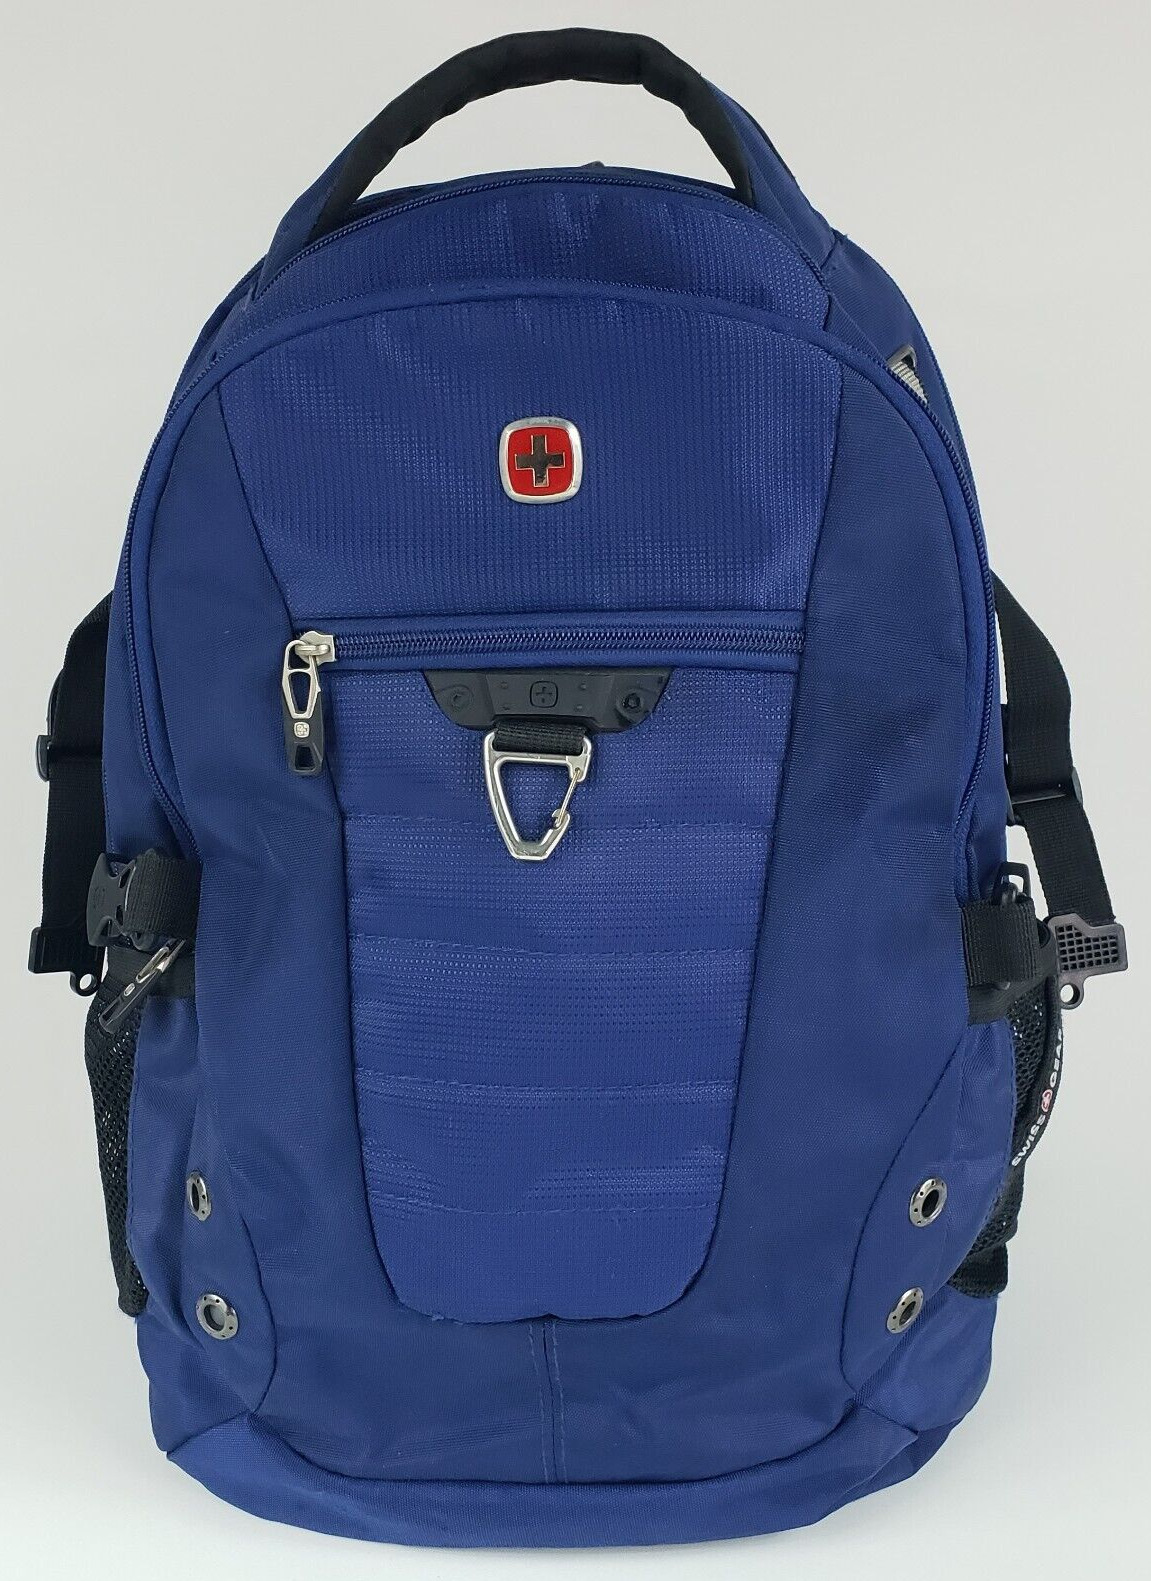 Swiss Gear Scan Smart Airflow Smart Laptop Backpack Blue Travel School TSA EUC